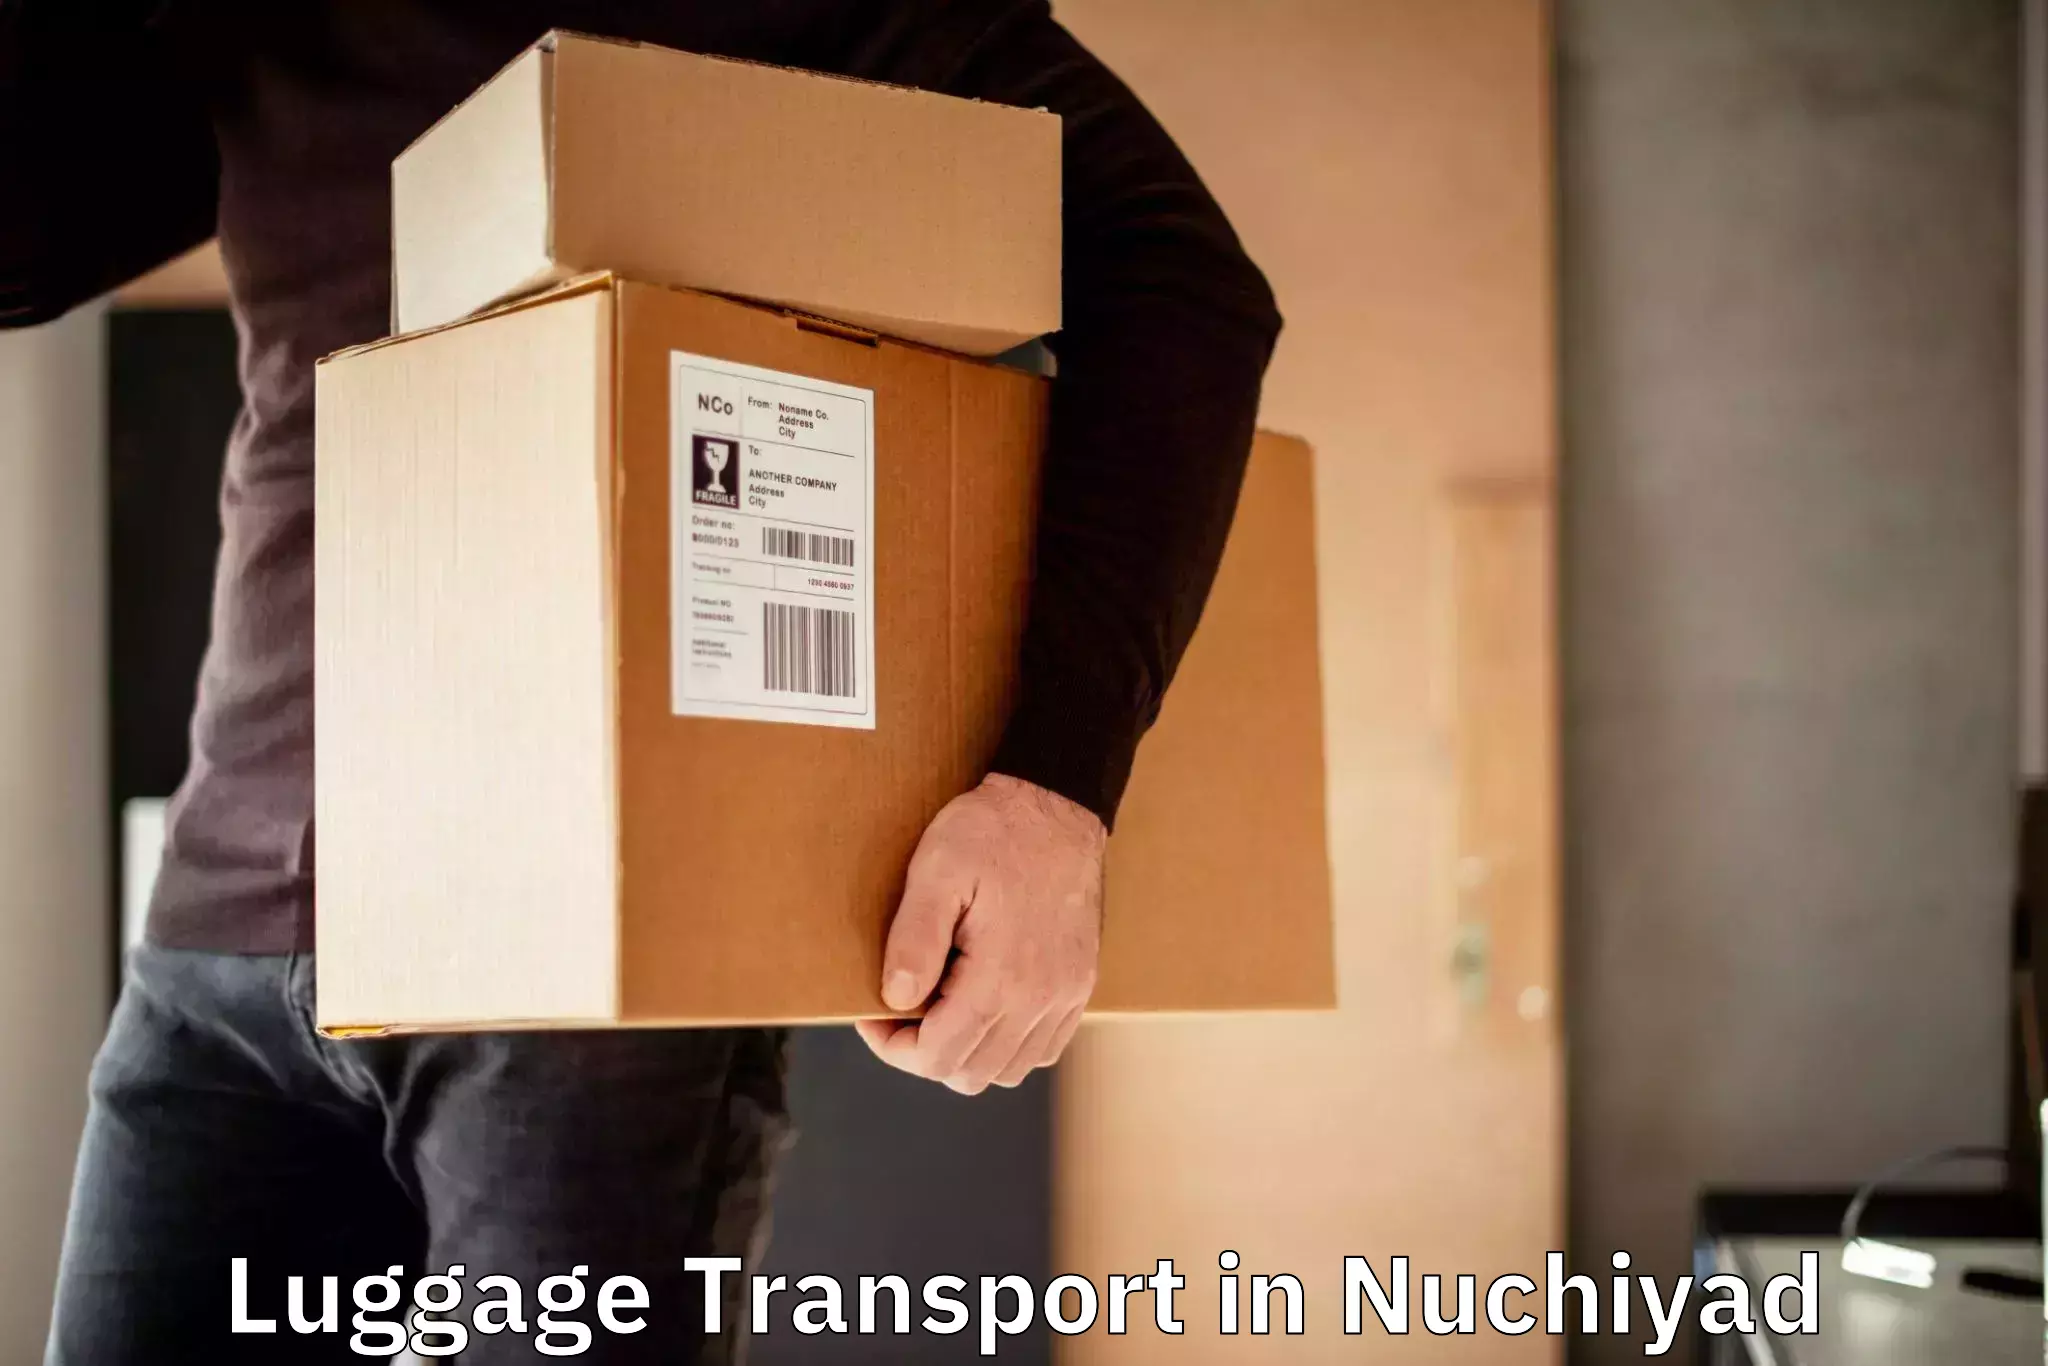 Nationwide luggage transport in Nuchiyad